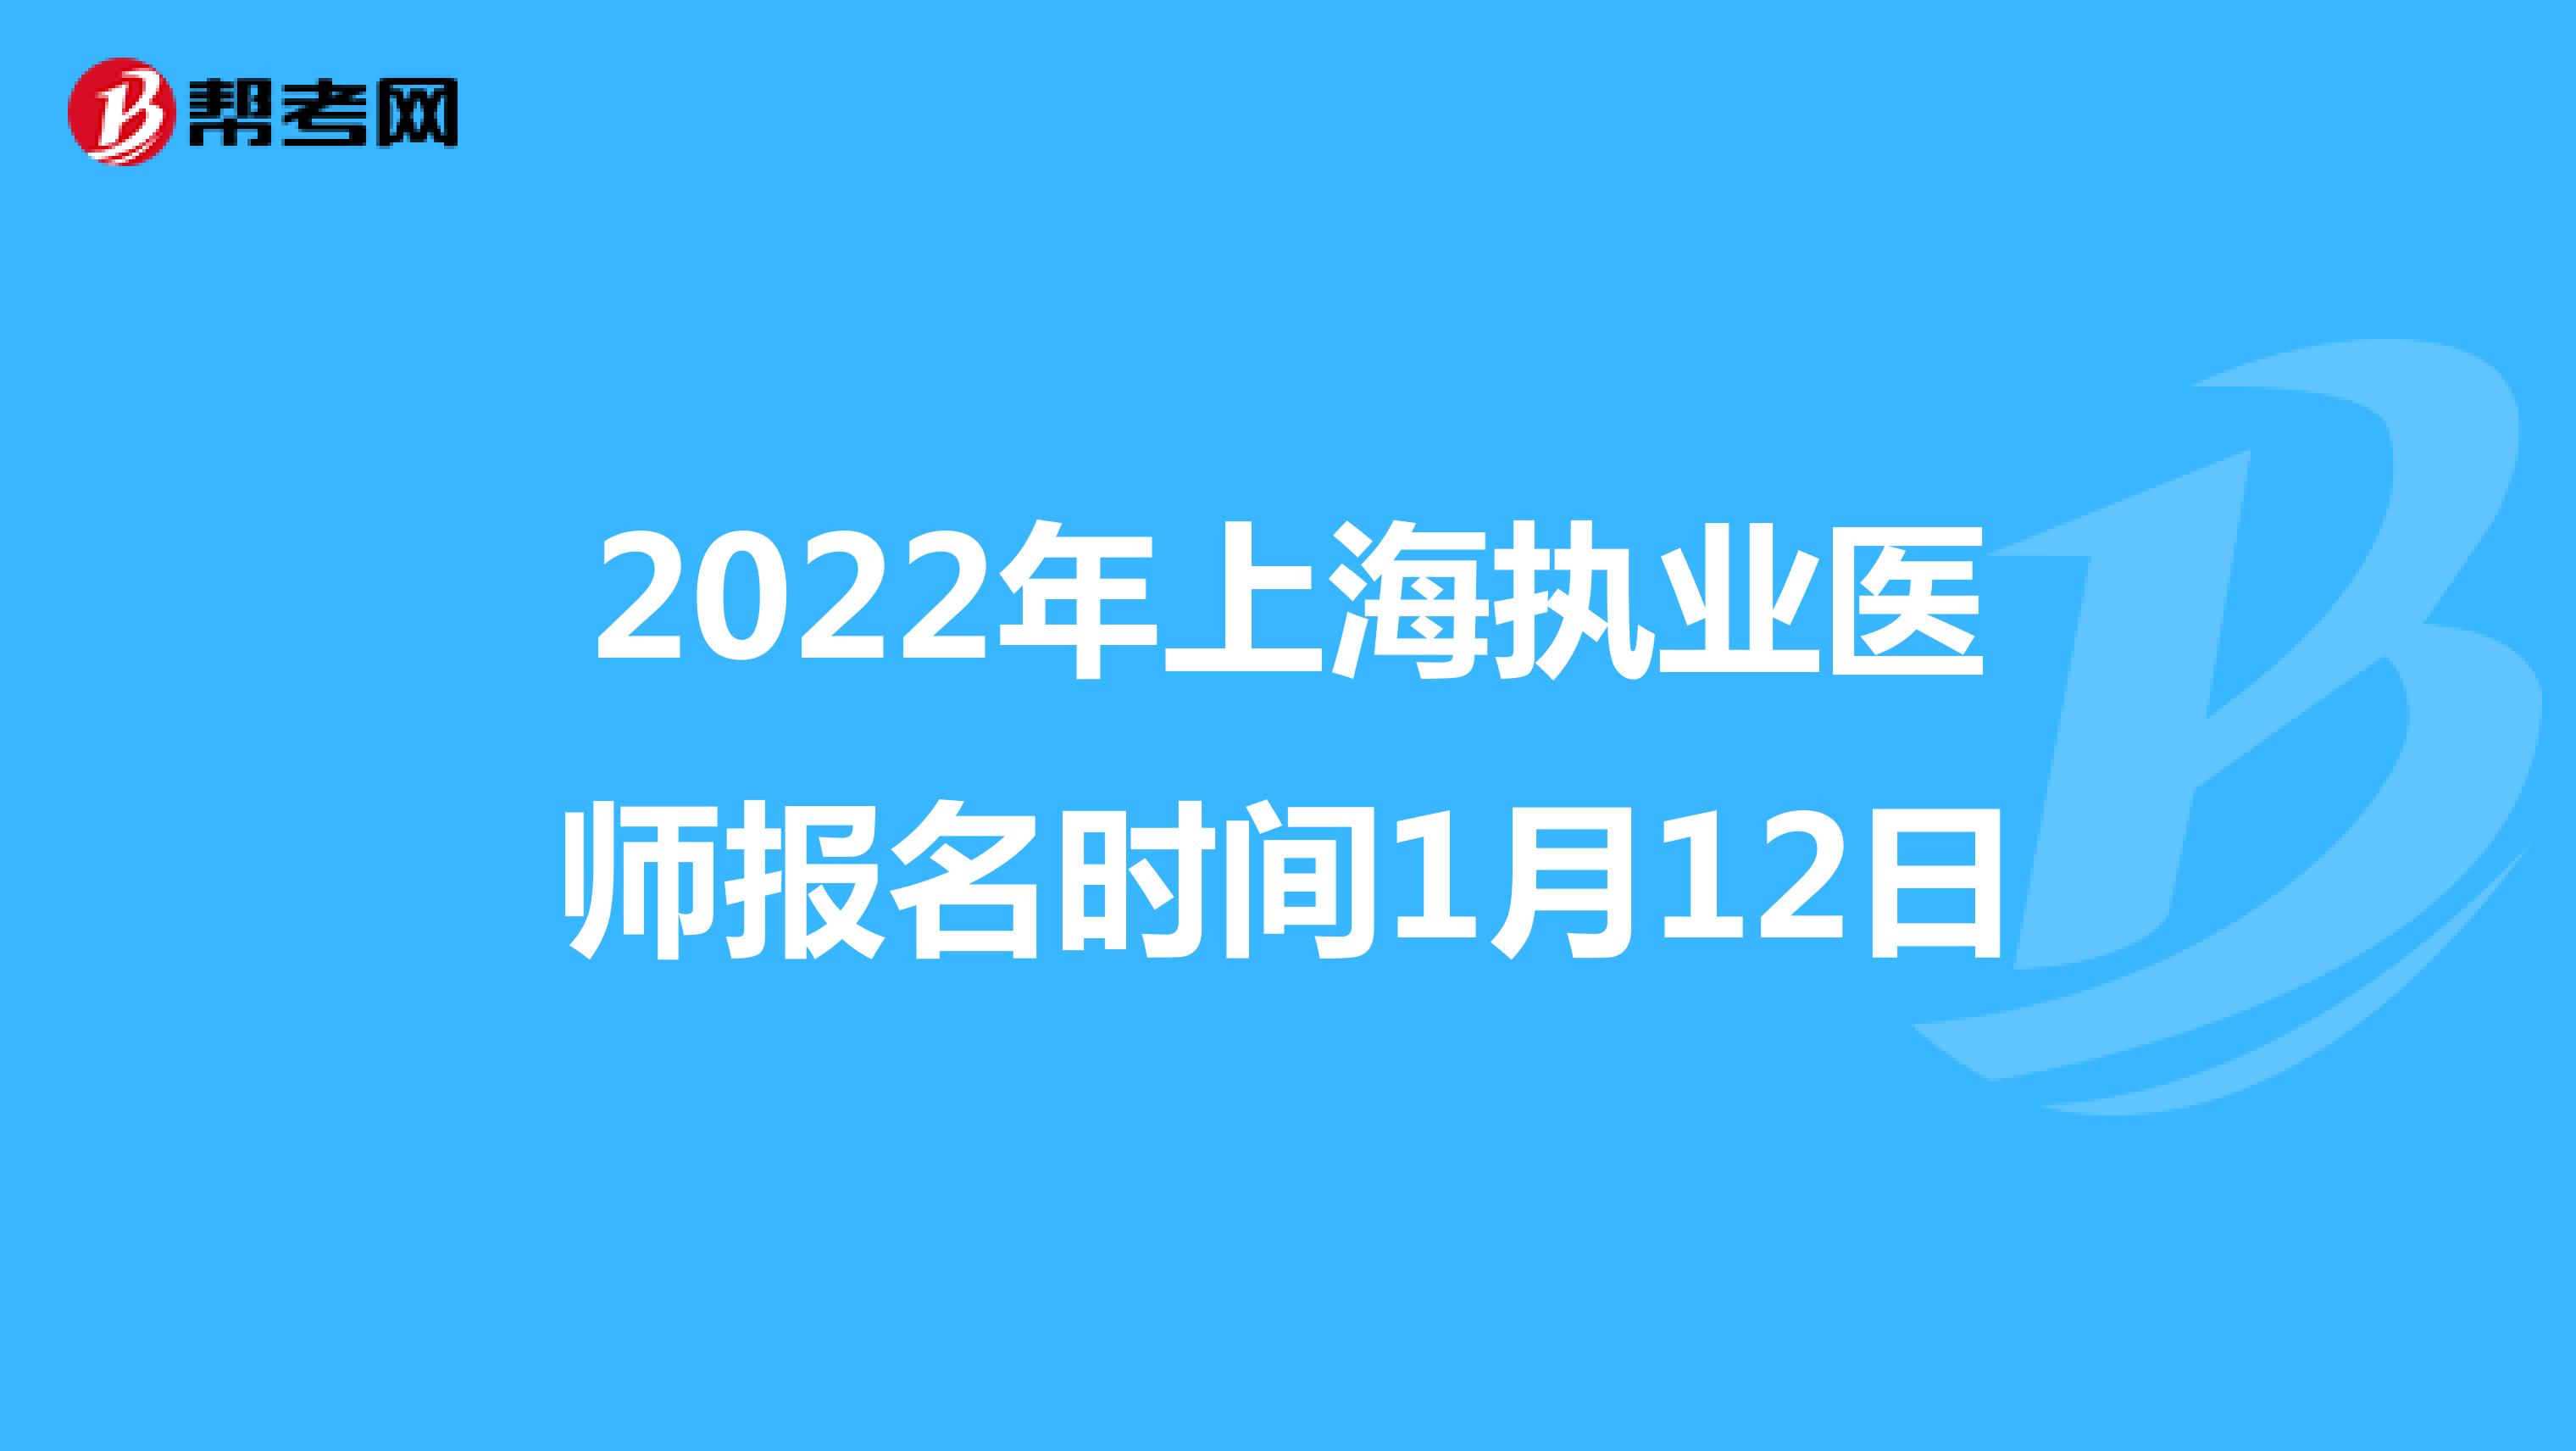 2022年上海执业医师报名时间1月12日